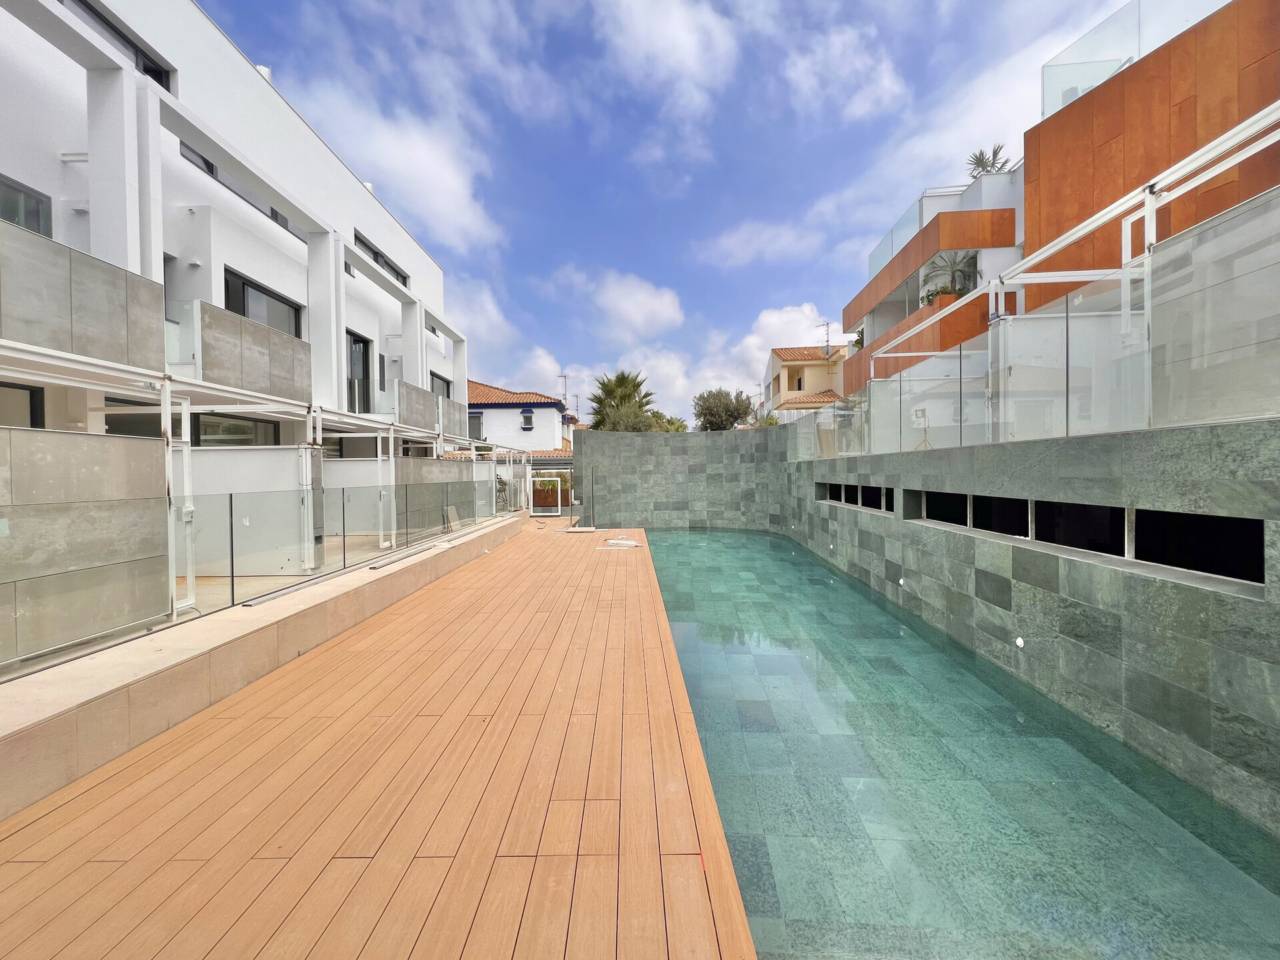 Imagen 39 de Promoción obra nueva terminada "EL OASIS DE ZAHARA" viviendas adosadas junto al mar